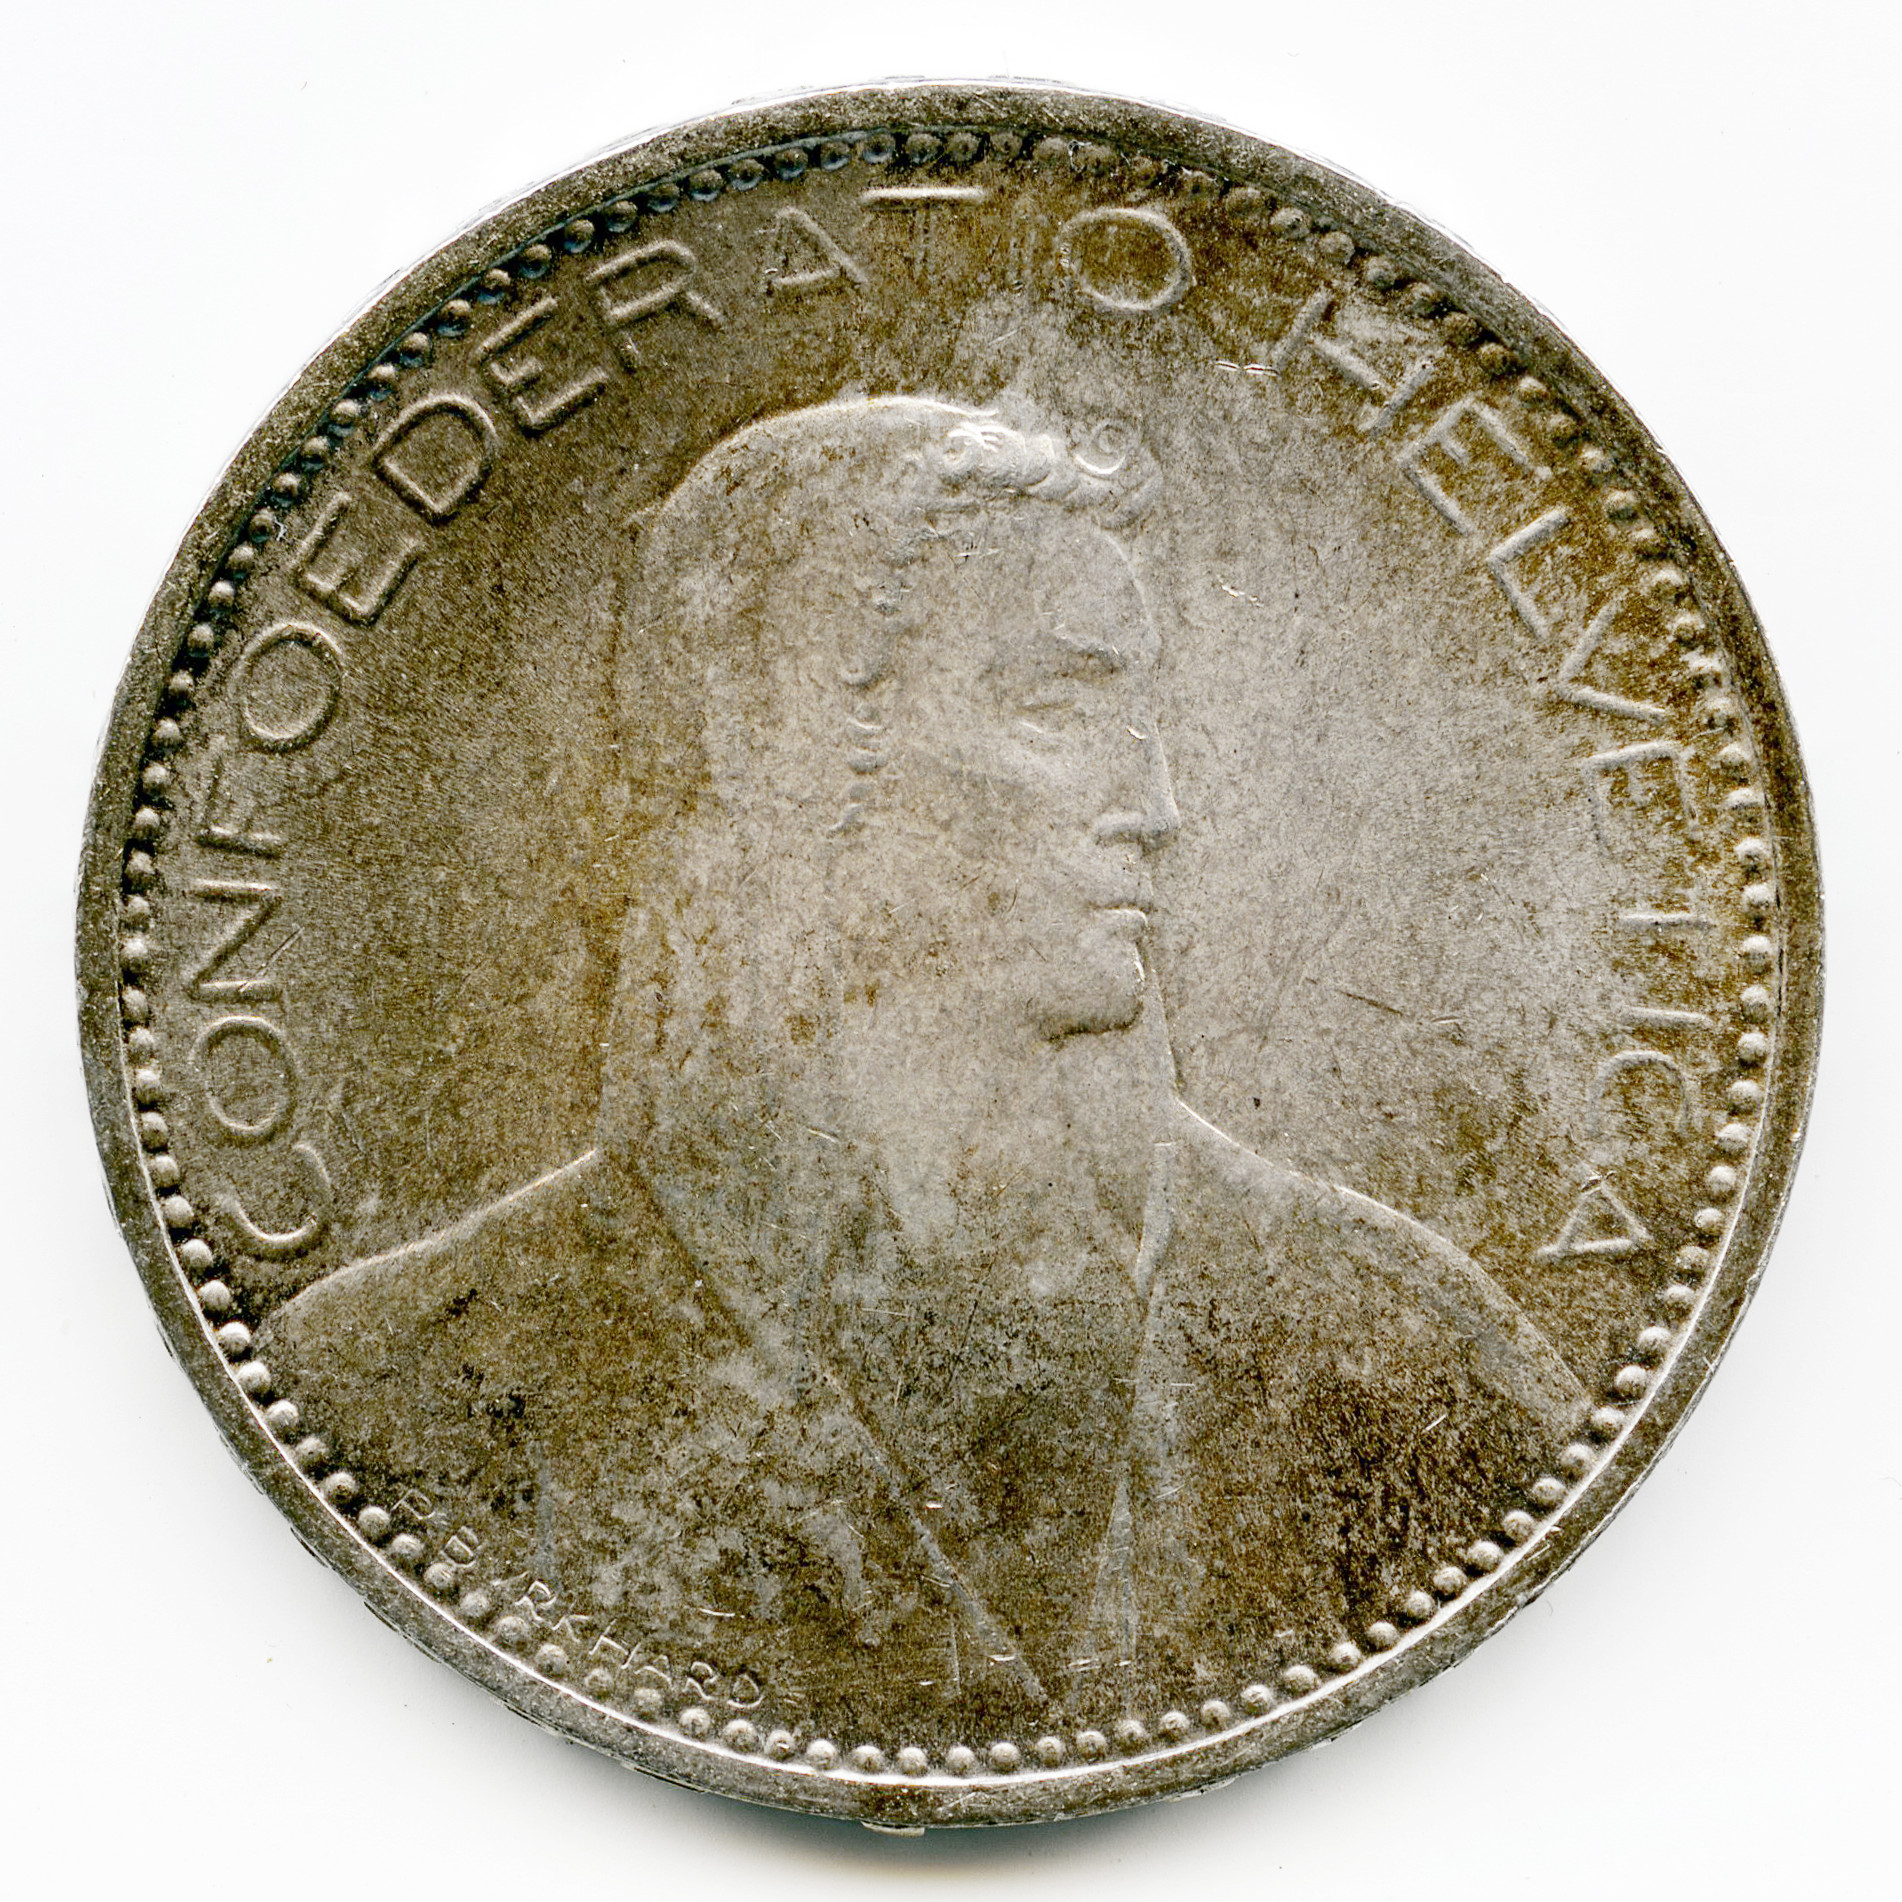 Suisse - 5 Francs - 1932 B avers